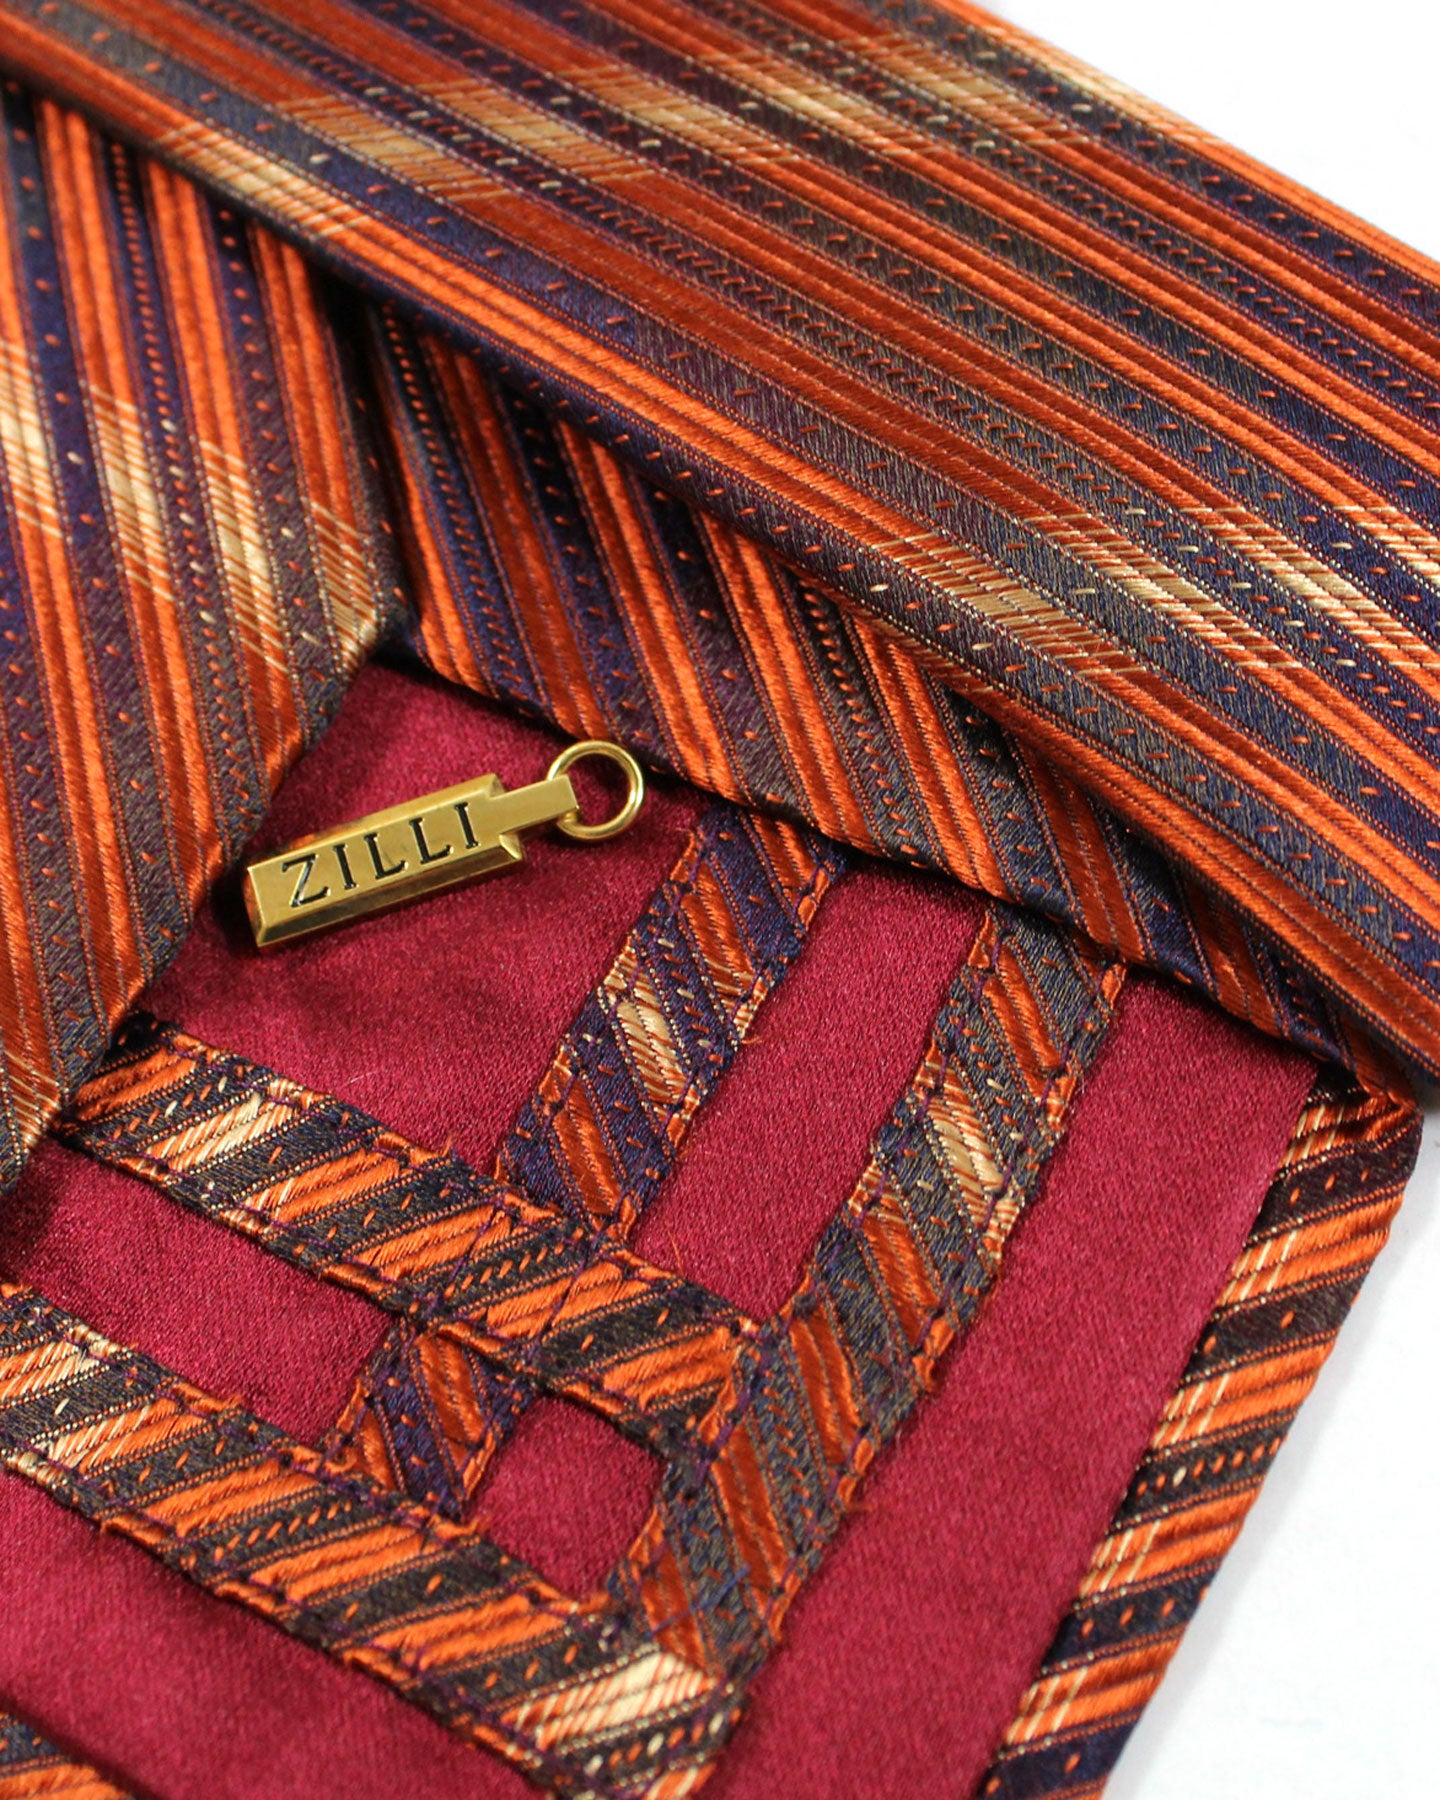 Zilli Silk Tie Rust Brown Stripes - Wide Necktie